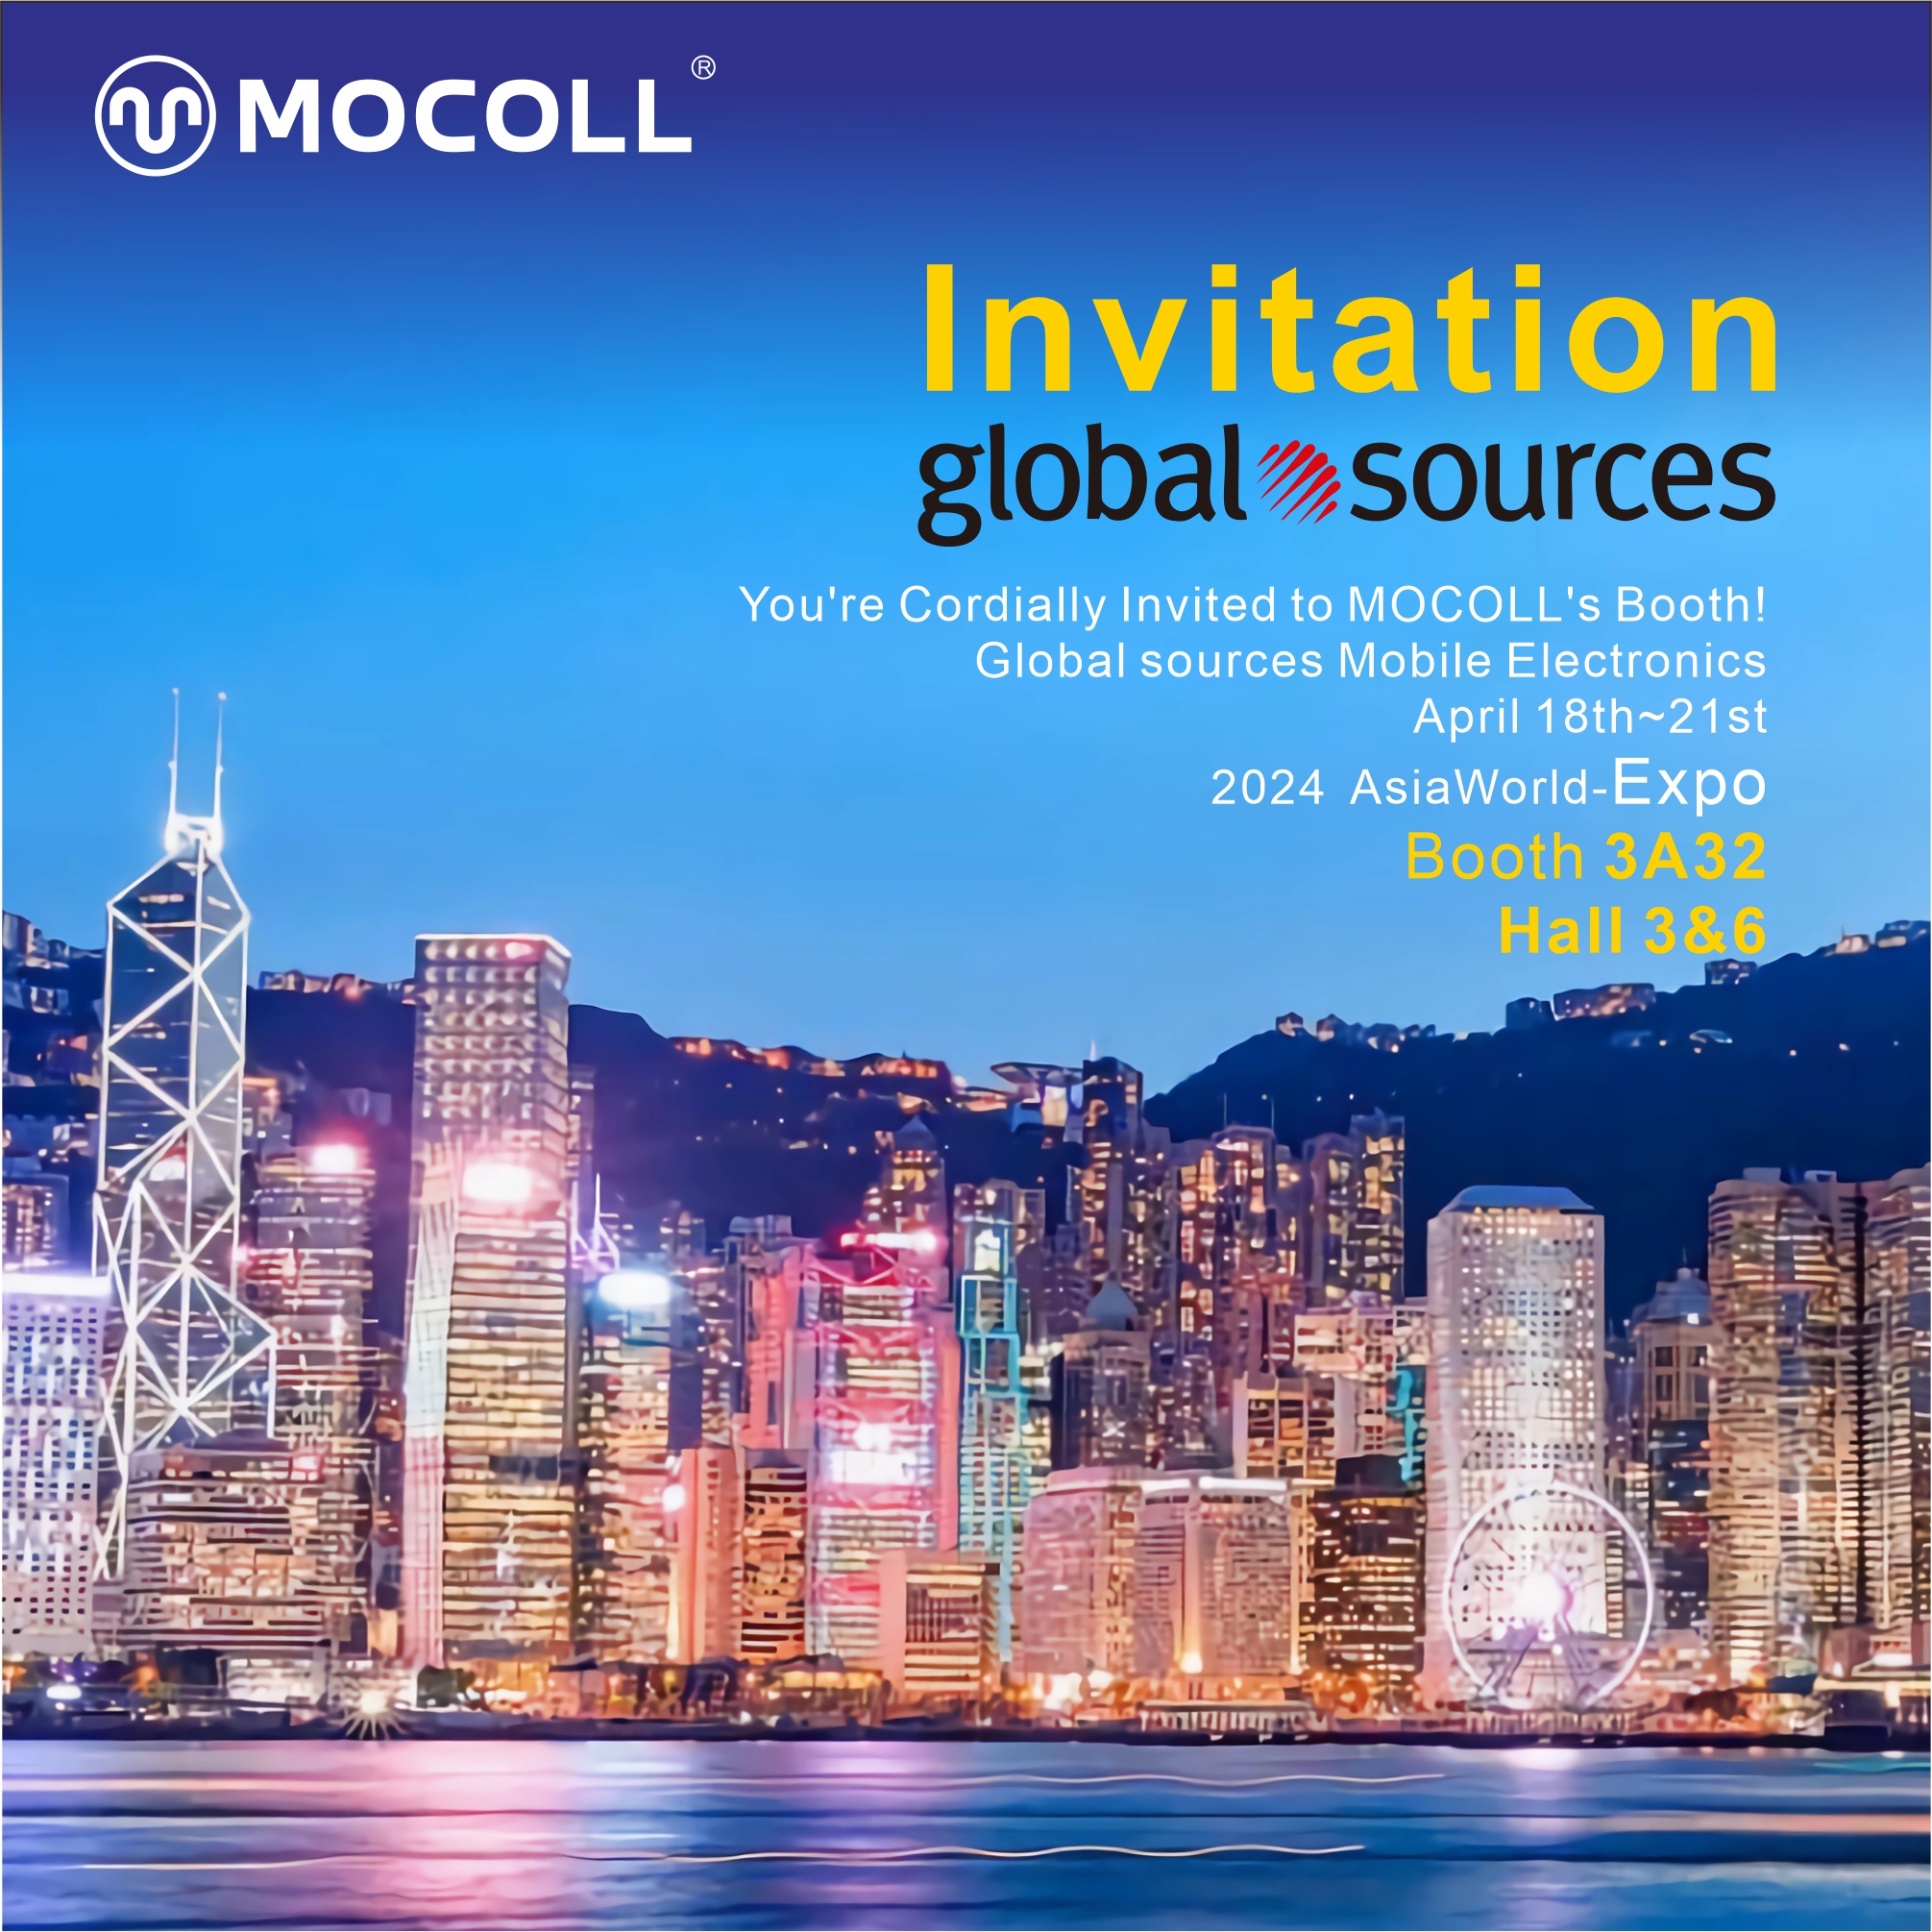 حول الزاوية | عرض منتجات موكول المبتكرة في عالمي مصادر متحرك إلكترونيات في هونغ كونغ